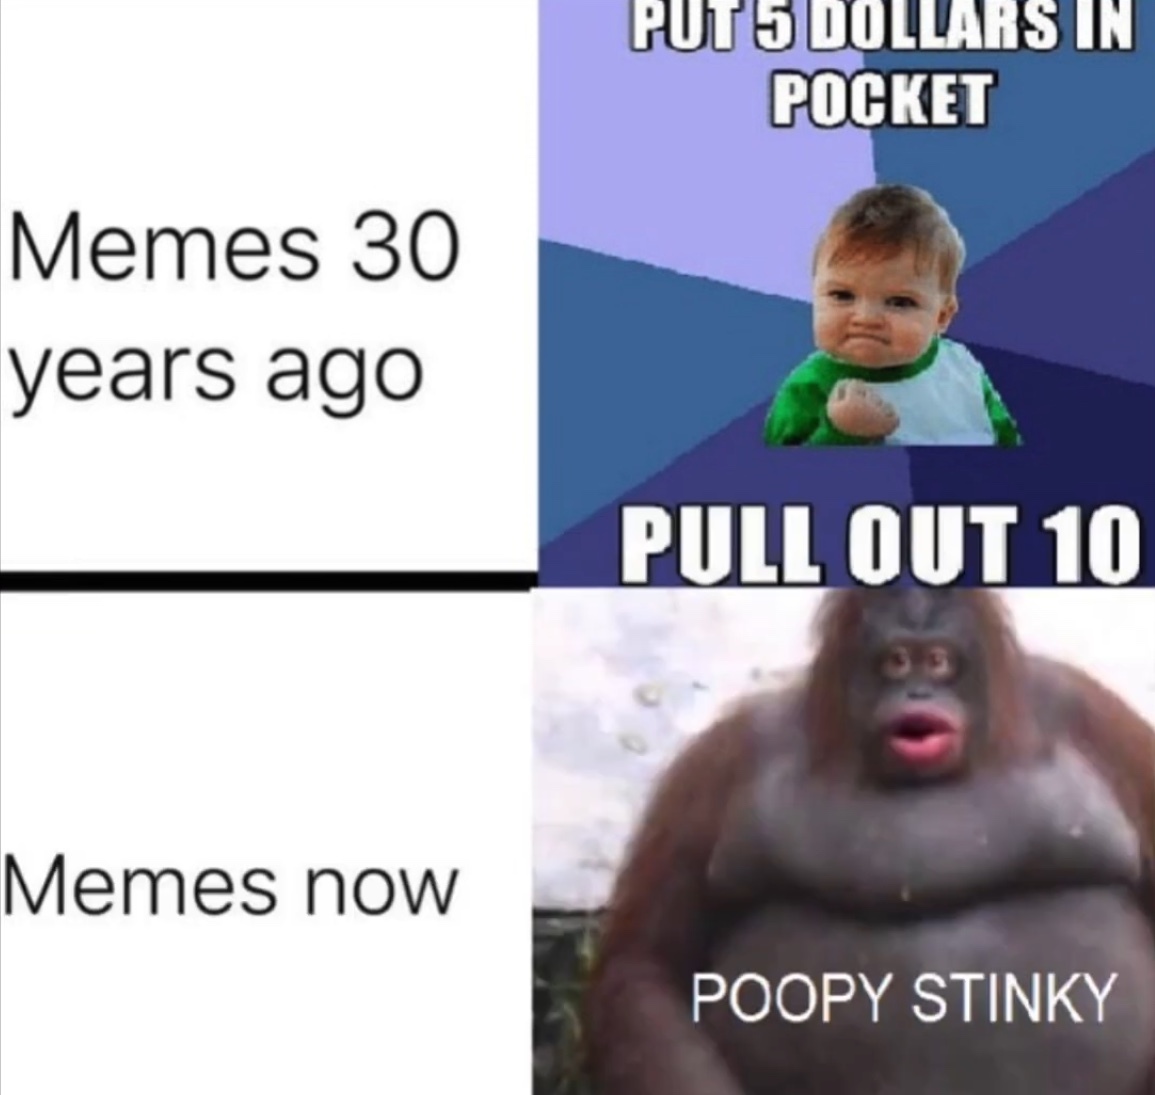 poopy stinky - meme